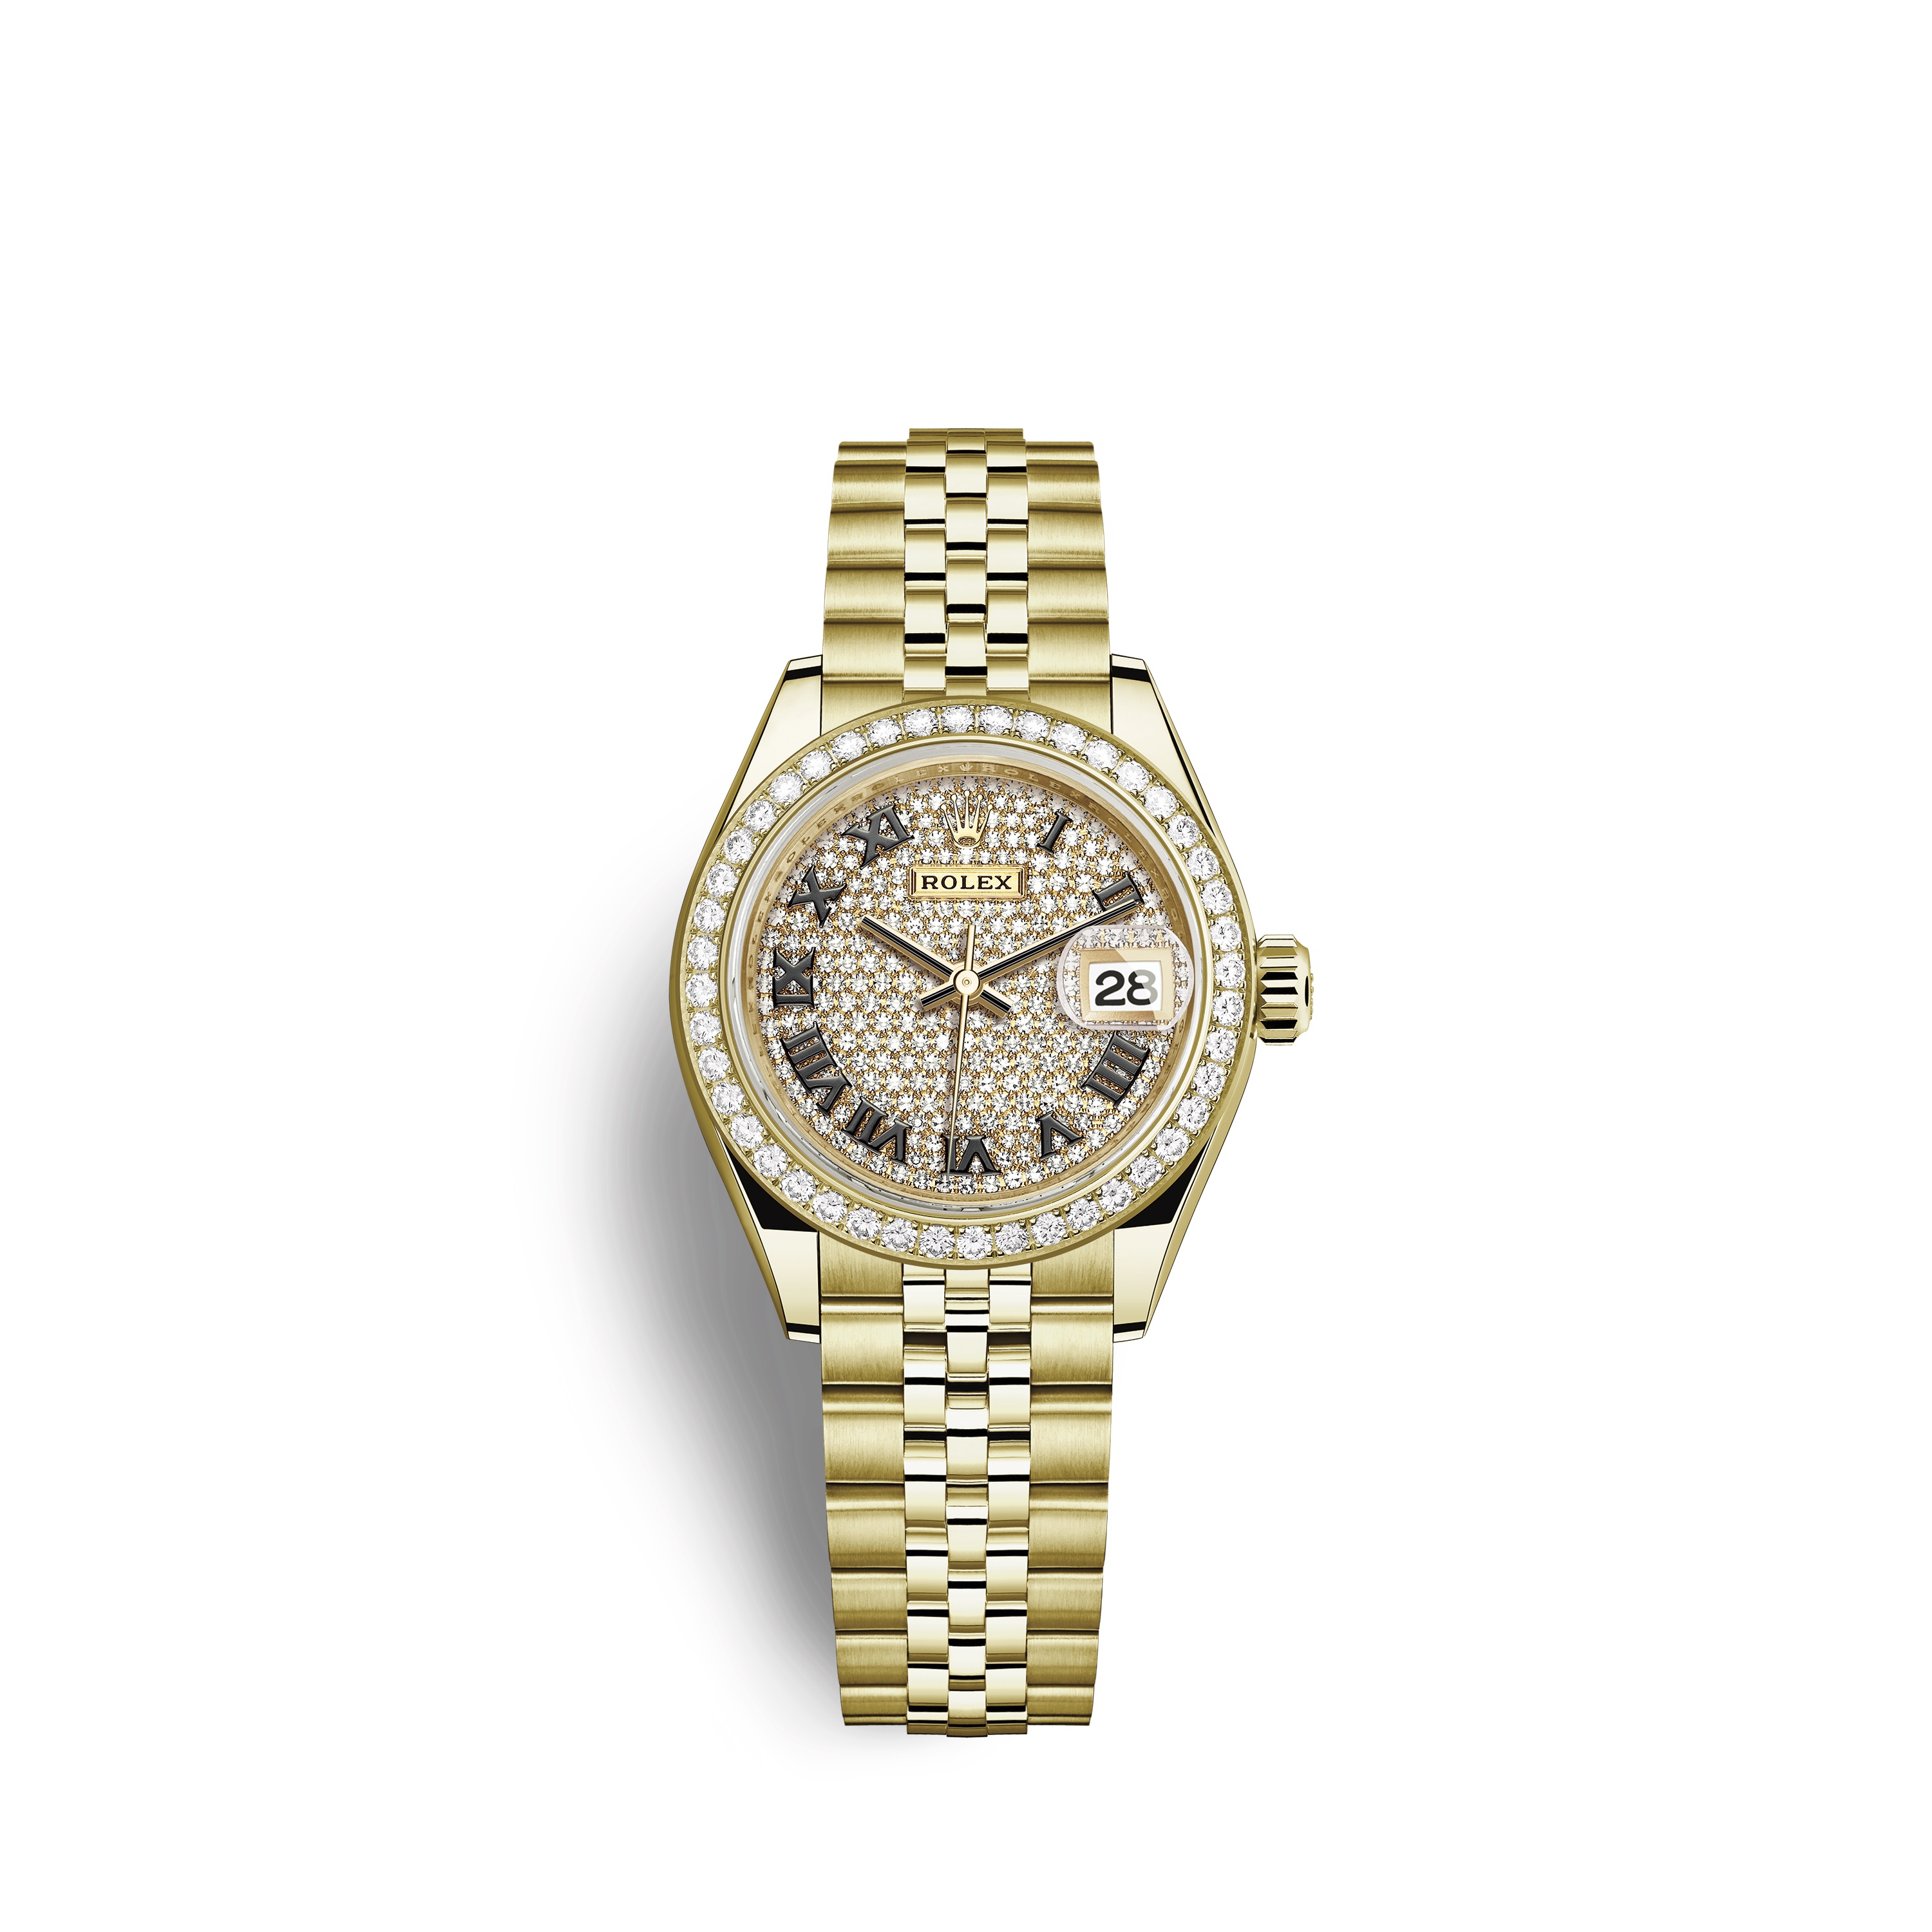 Lady-Datejust 28 279138RBR Gold & Diamonds Watch (Diamond-Paved)